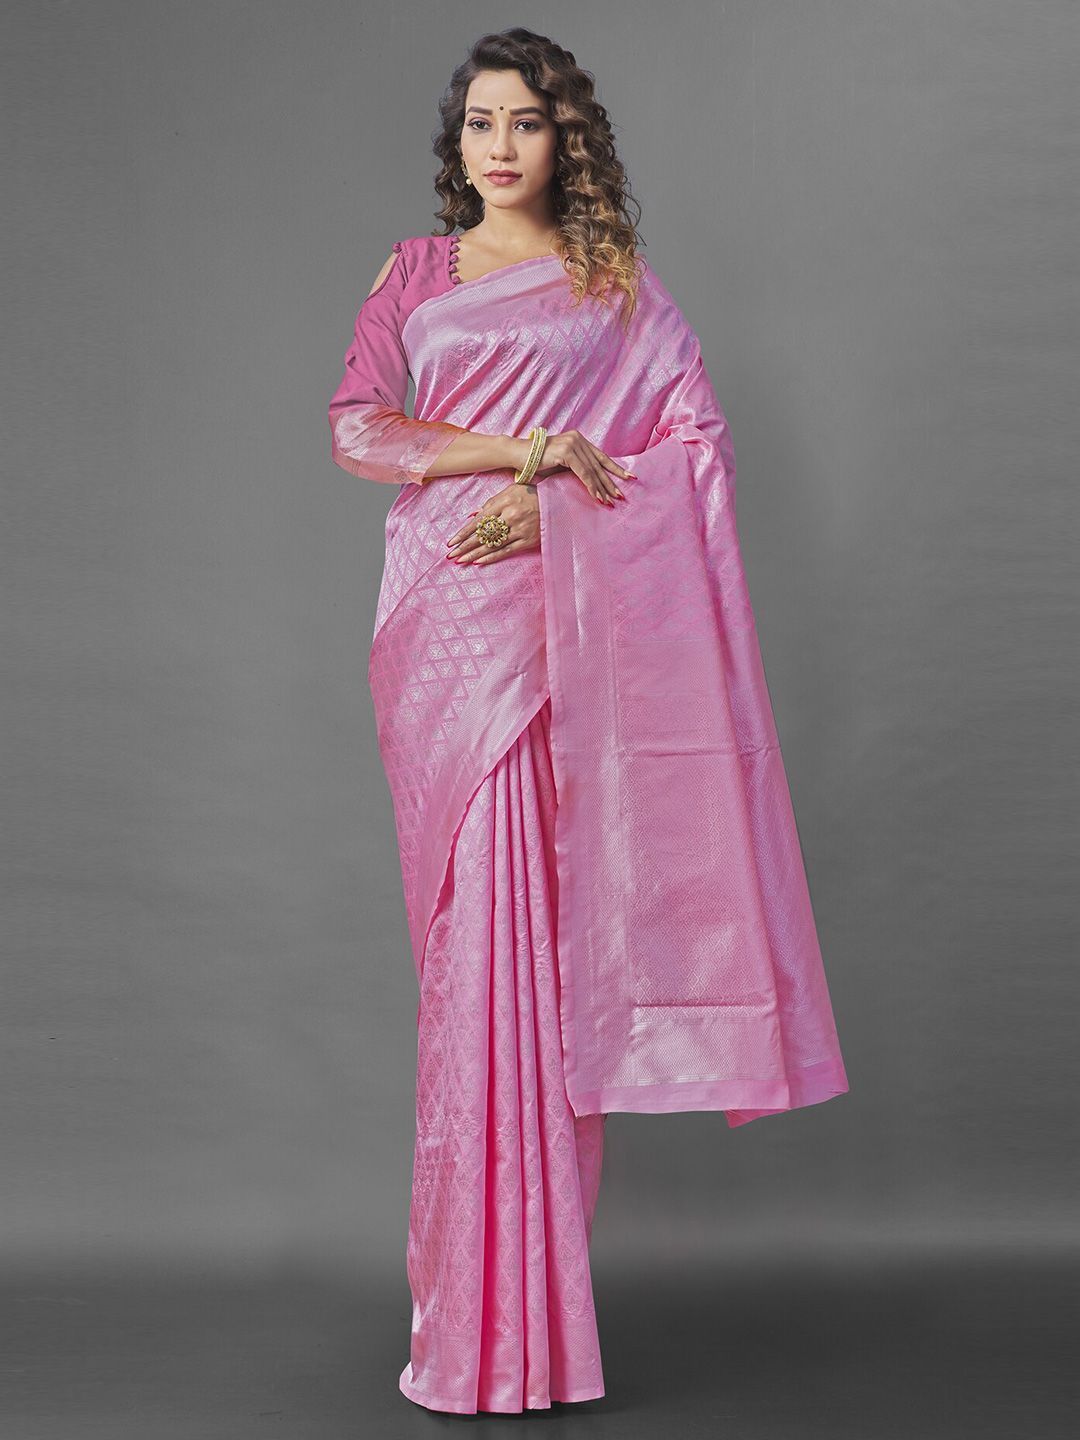 Wuxi Peach-Coloured & Silver-Toned Woven Design Zari Pure Silk Banarasi Saree Price in India